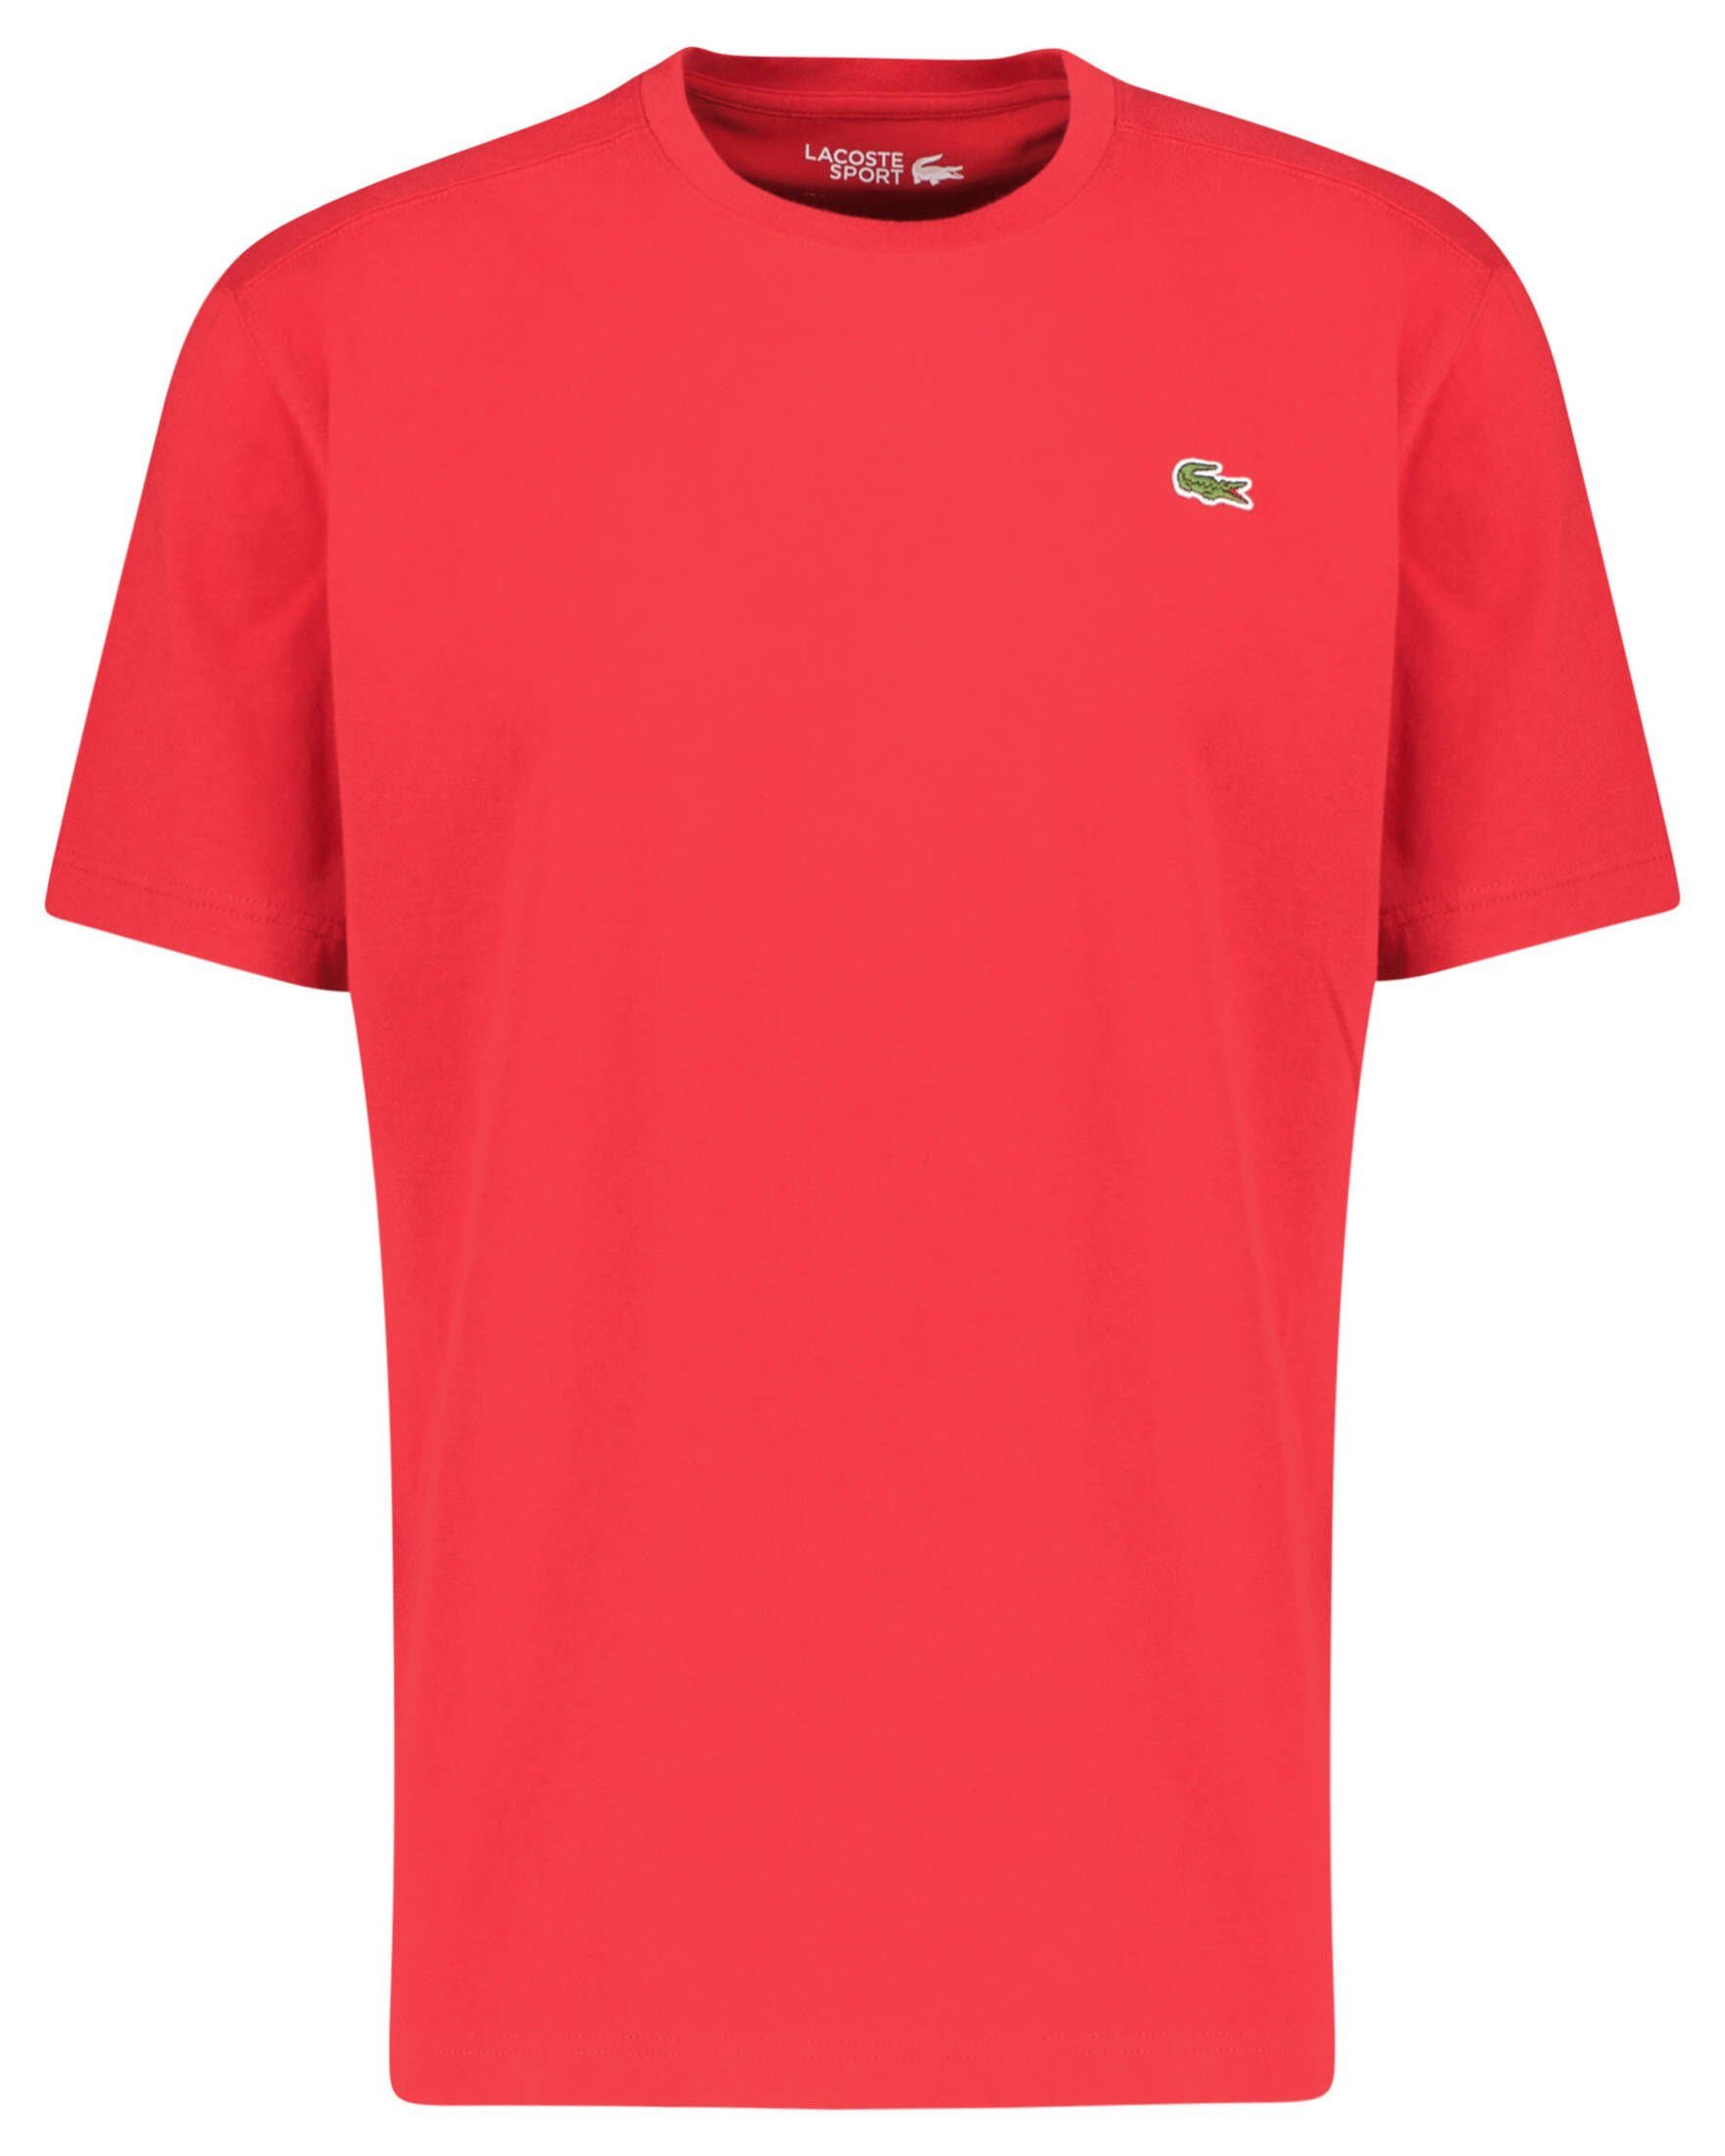 Lacoste Sport Tennisshirt Herren Tennisshirt TEE-SHIRT rot (74)